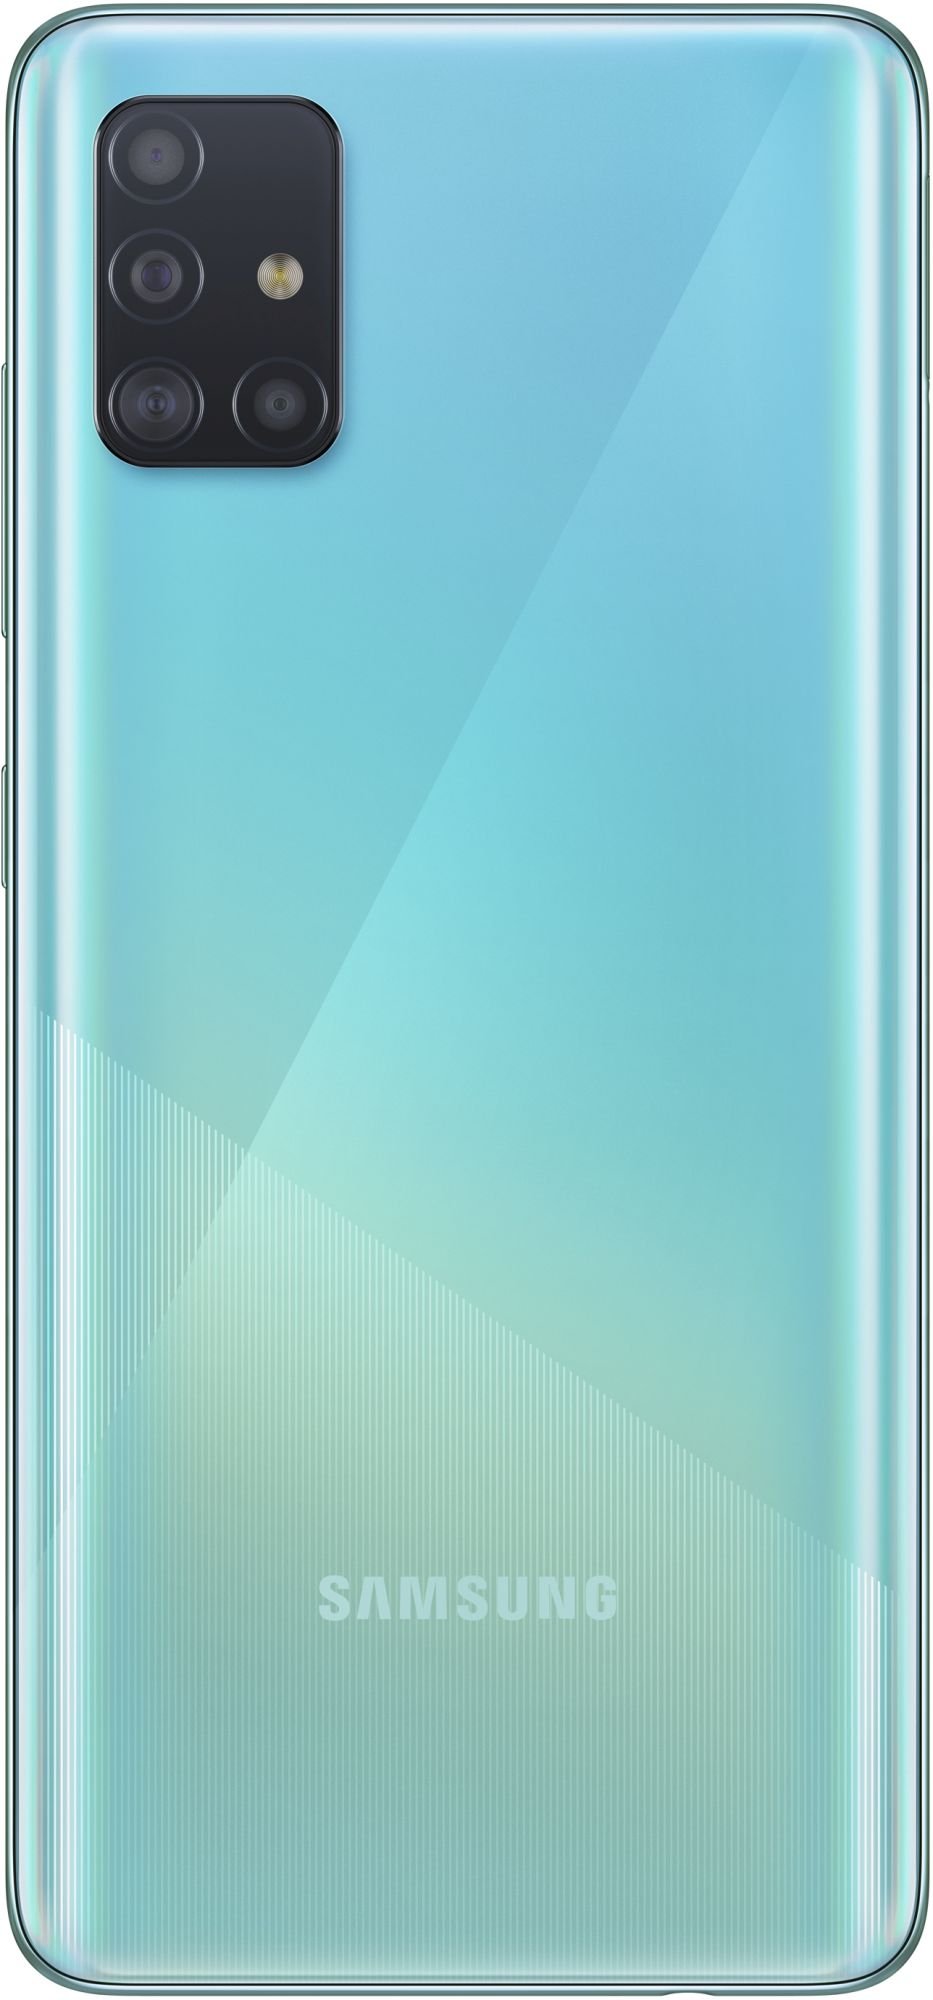 Samsung Galaxy A51 64GB_hor Blue